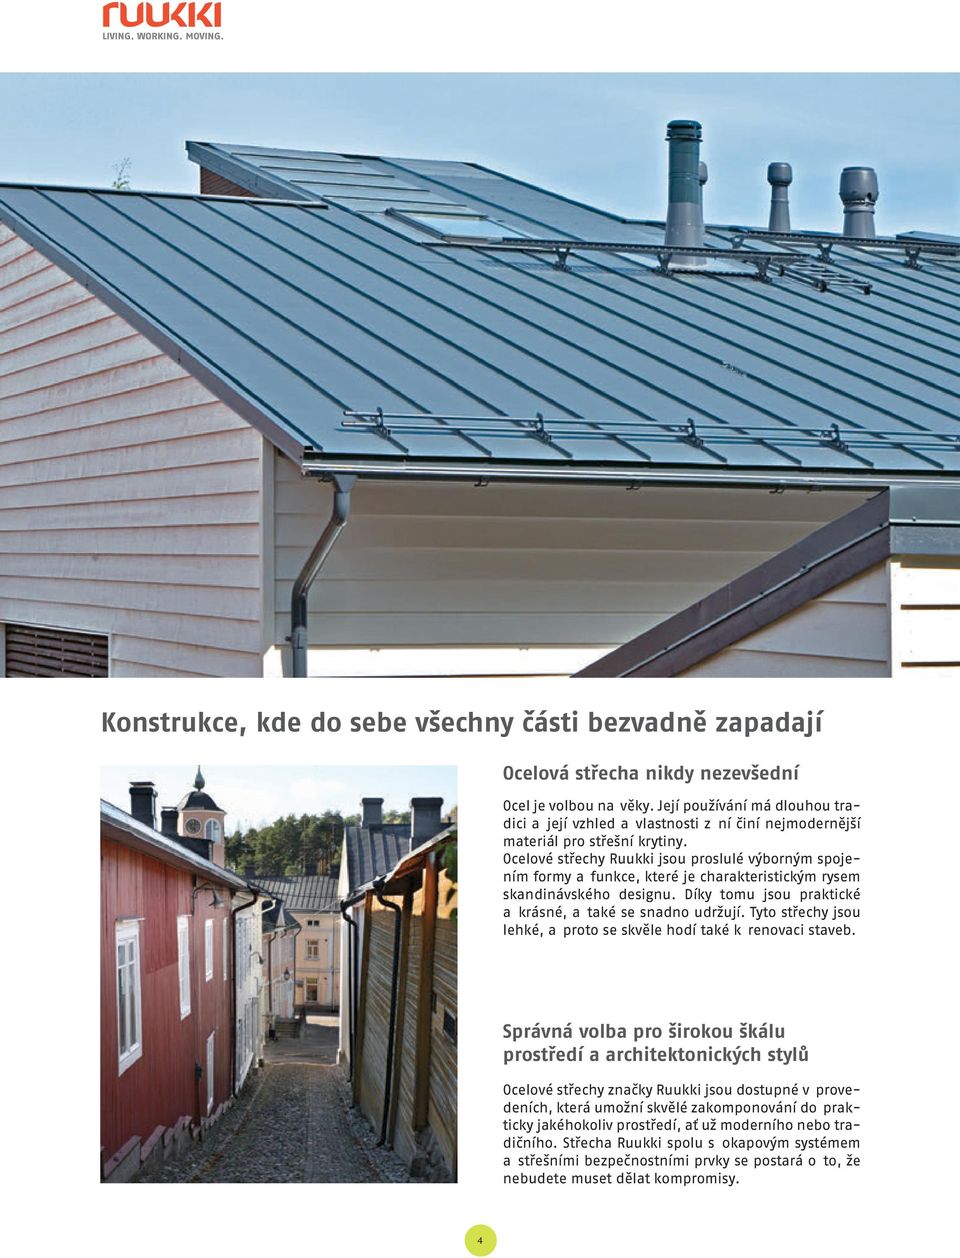 Ocelové střechy Ruukki jsou proslulé výborným spojením formy a funkce, které je charakteristickým rysem skandinávského designu. Díky tomu jsou praktické a krásné, a také se snadno udržují.